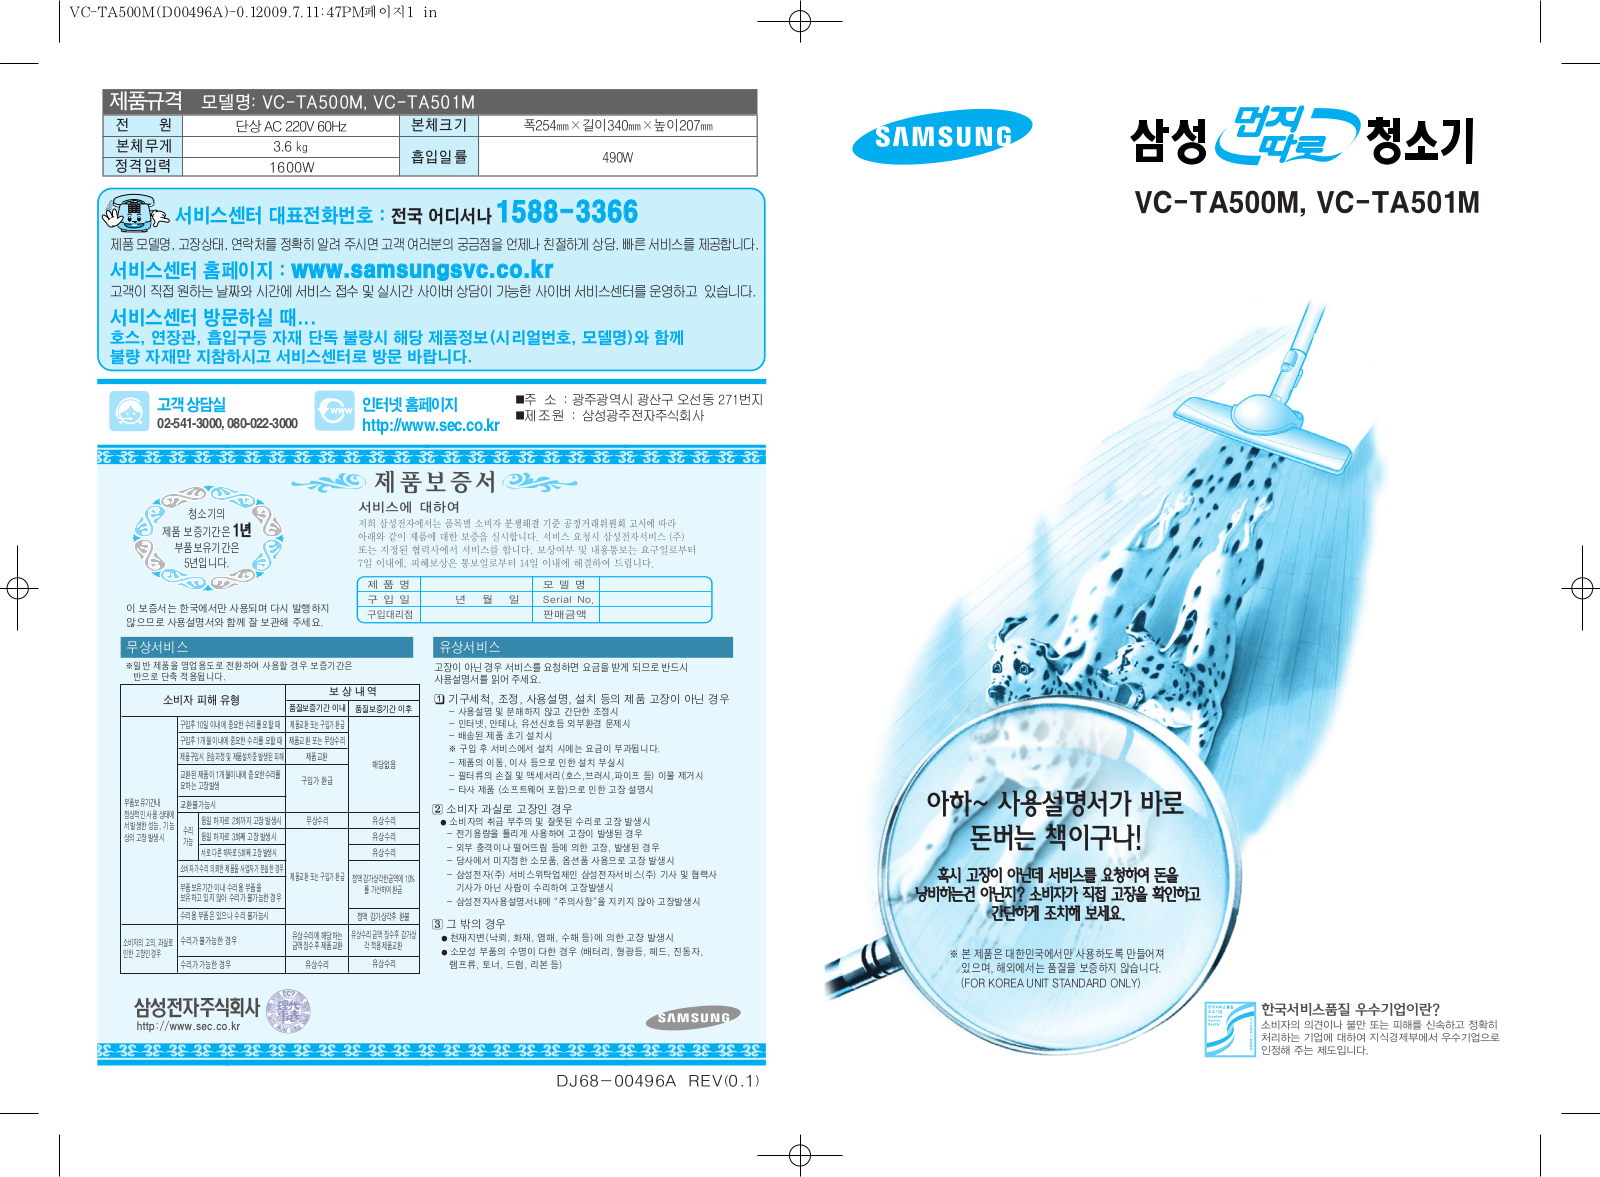 Samsung VC-TA500M, VC-TA501M Manual